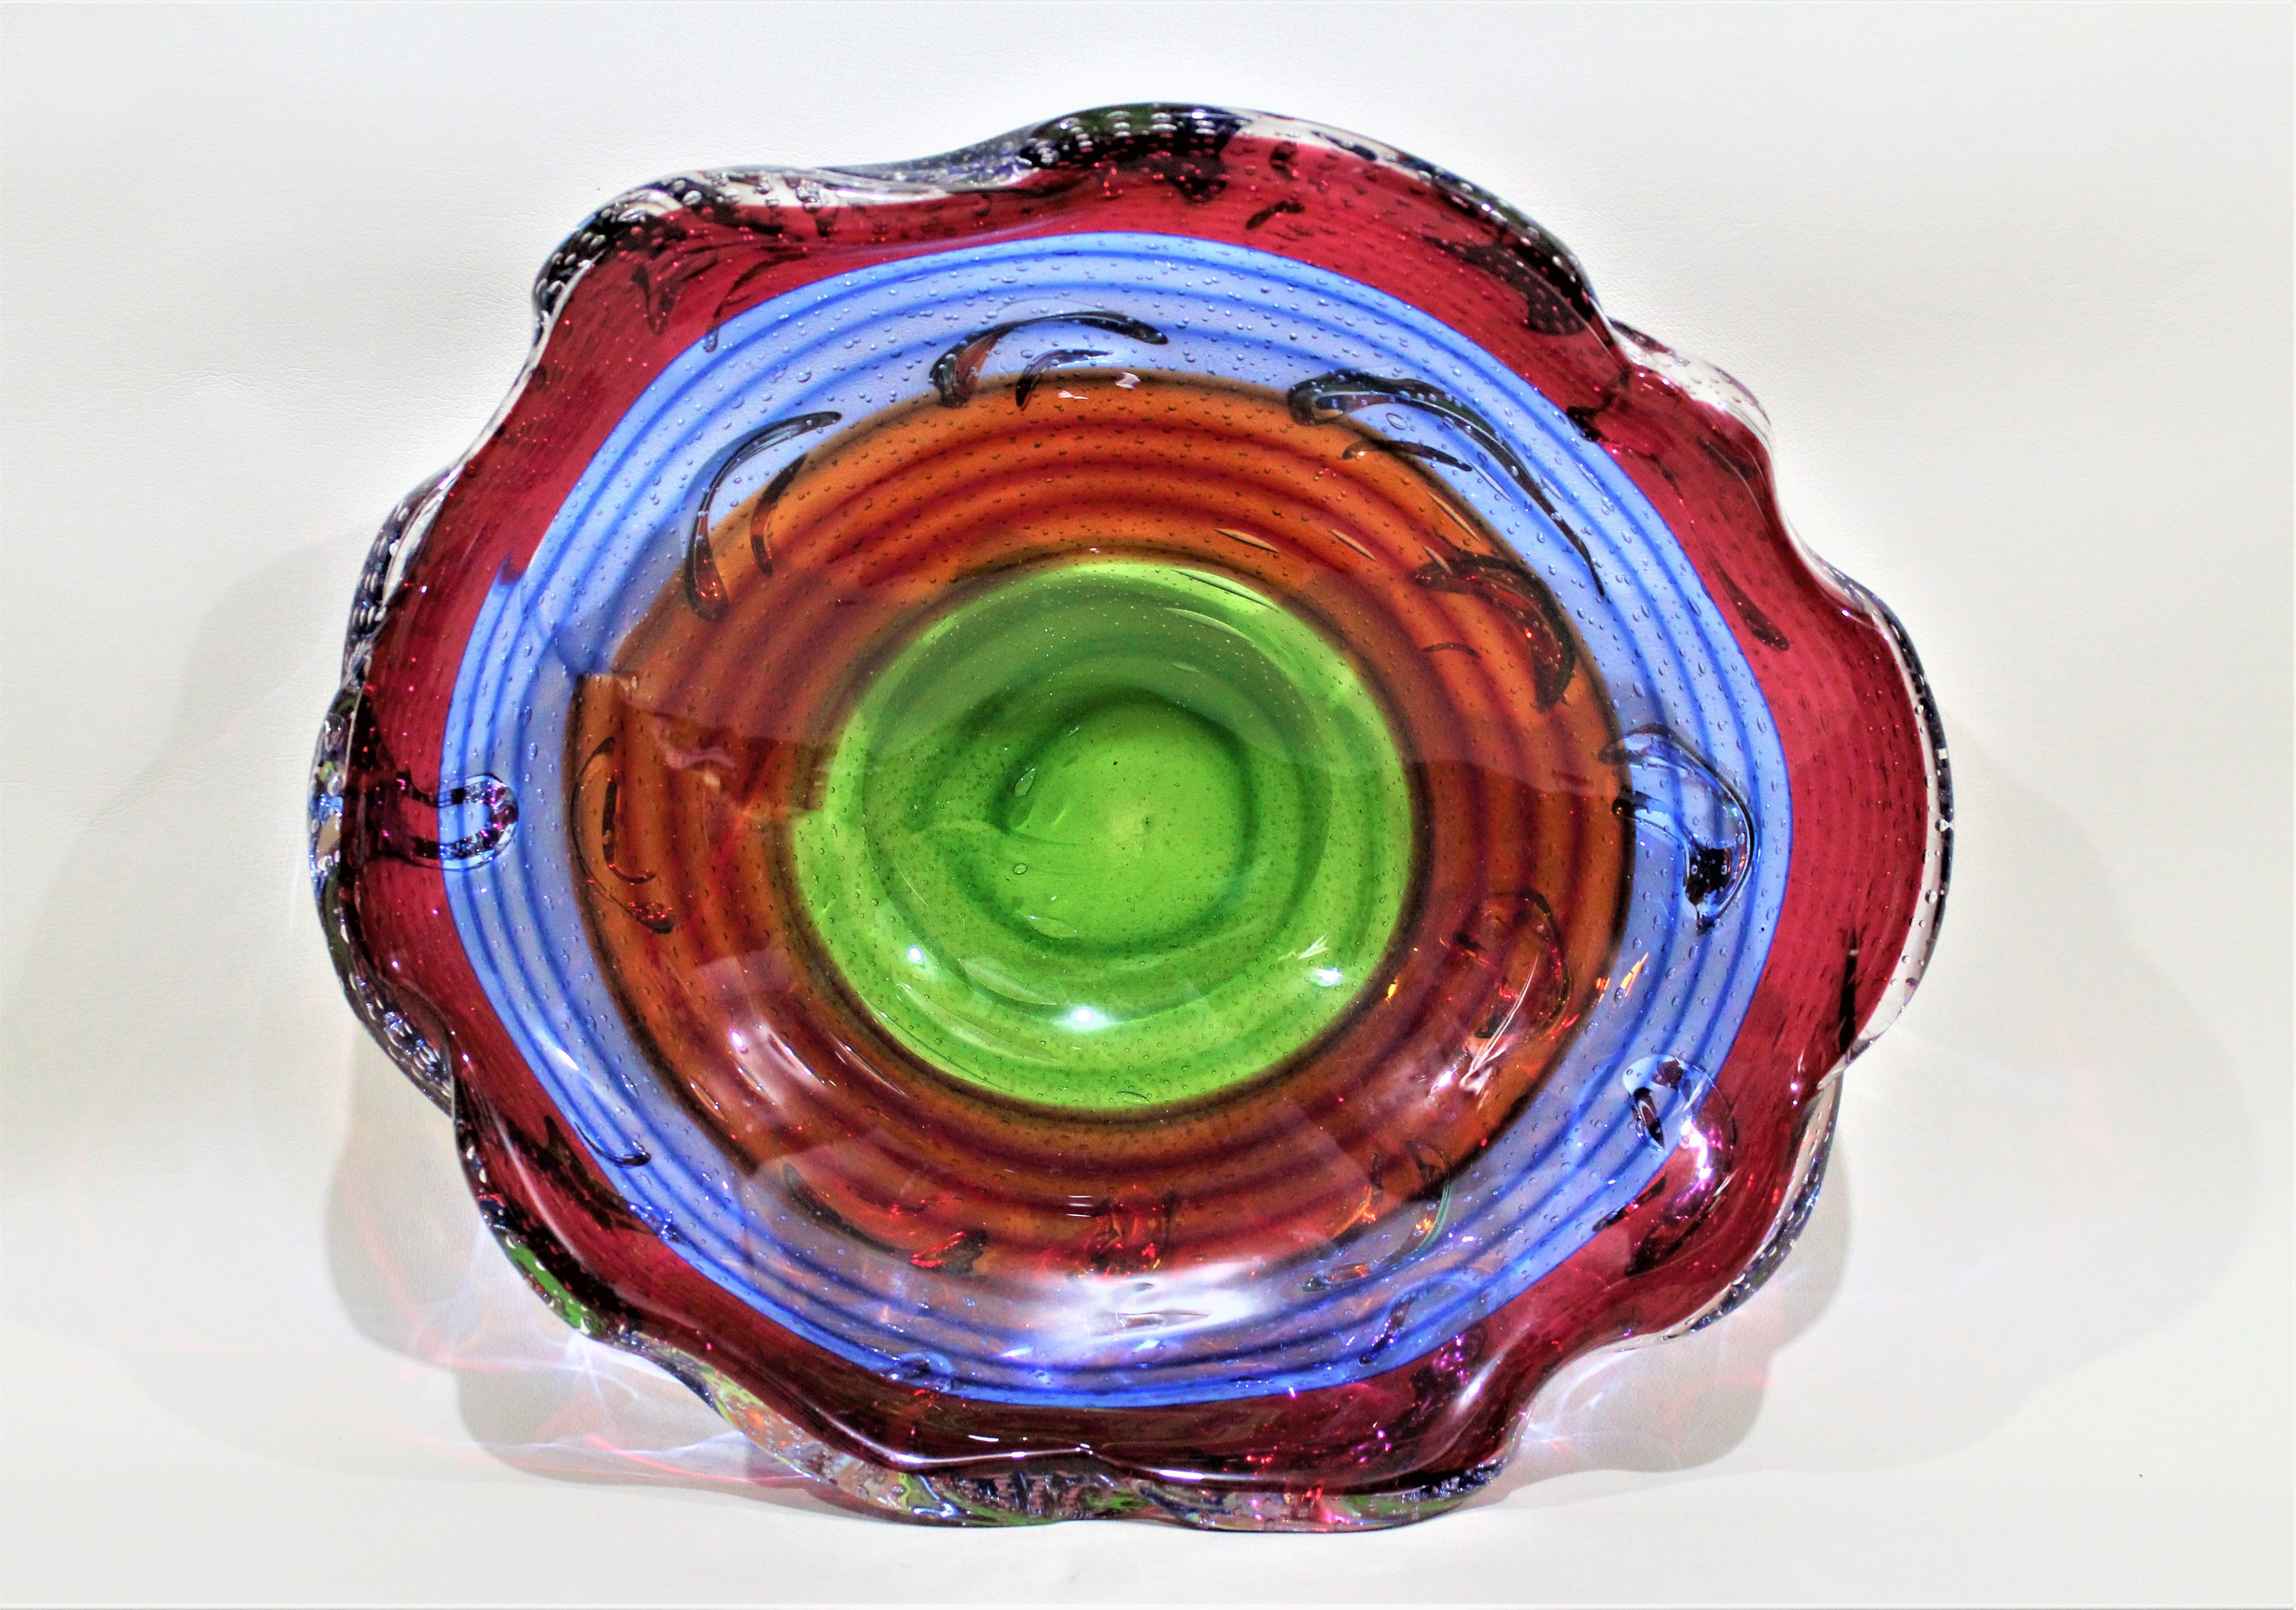 Diese gewundene Schale aus mehrfarbigen Glasschnüren wurde wahrscheinlich Mitte der 1960er Jahre von einem italienischen Kunsthandwerker hergestellt. Die Schale ist unsigniert, so dass ein genauer Künstler oder Hersteller nicht ermittelt werden